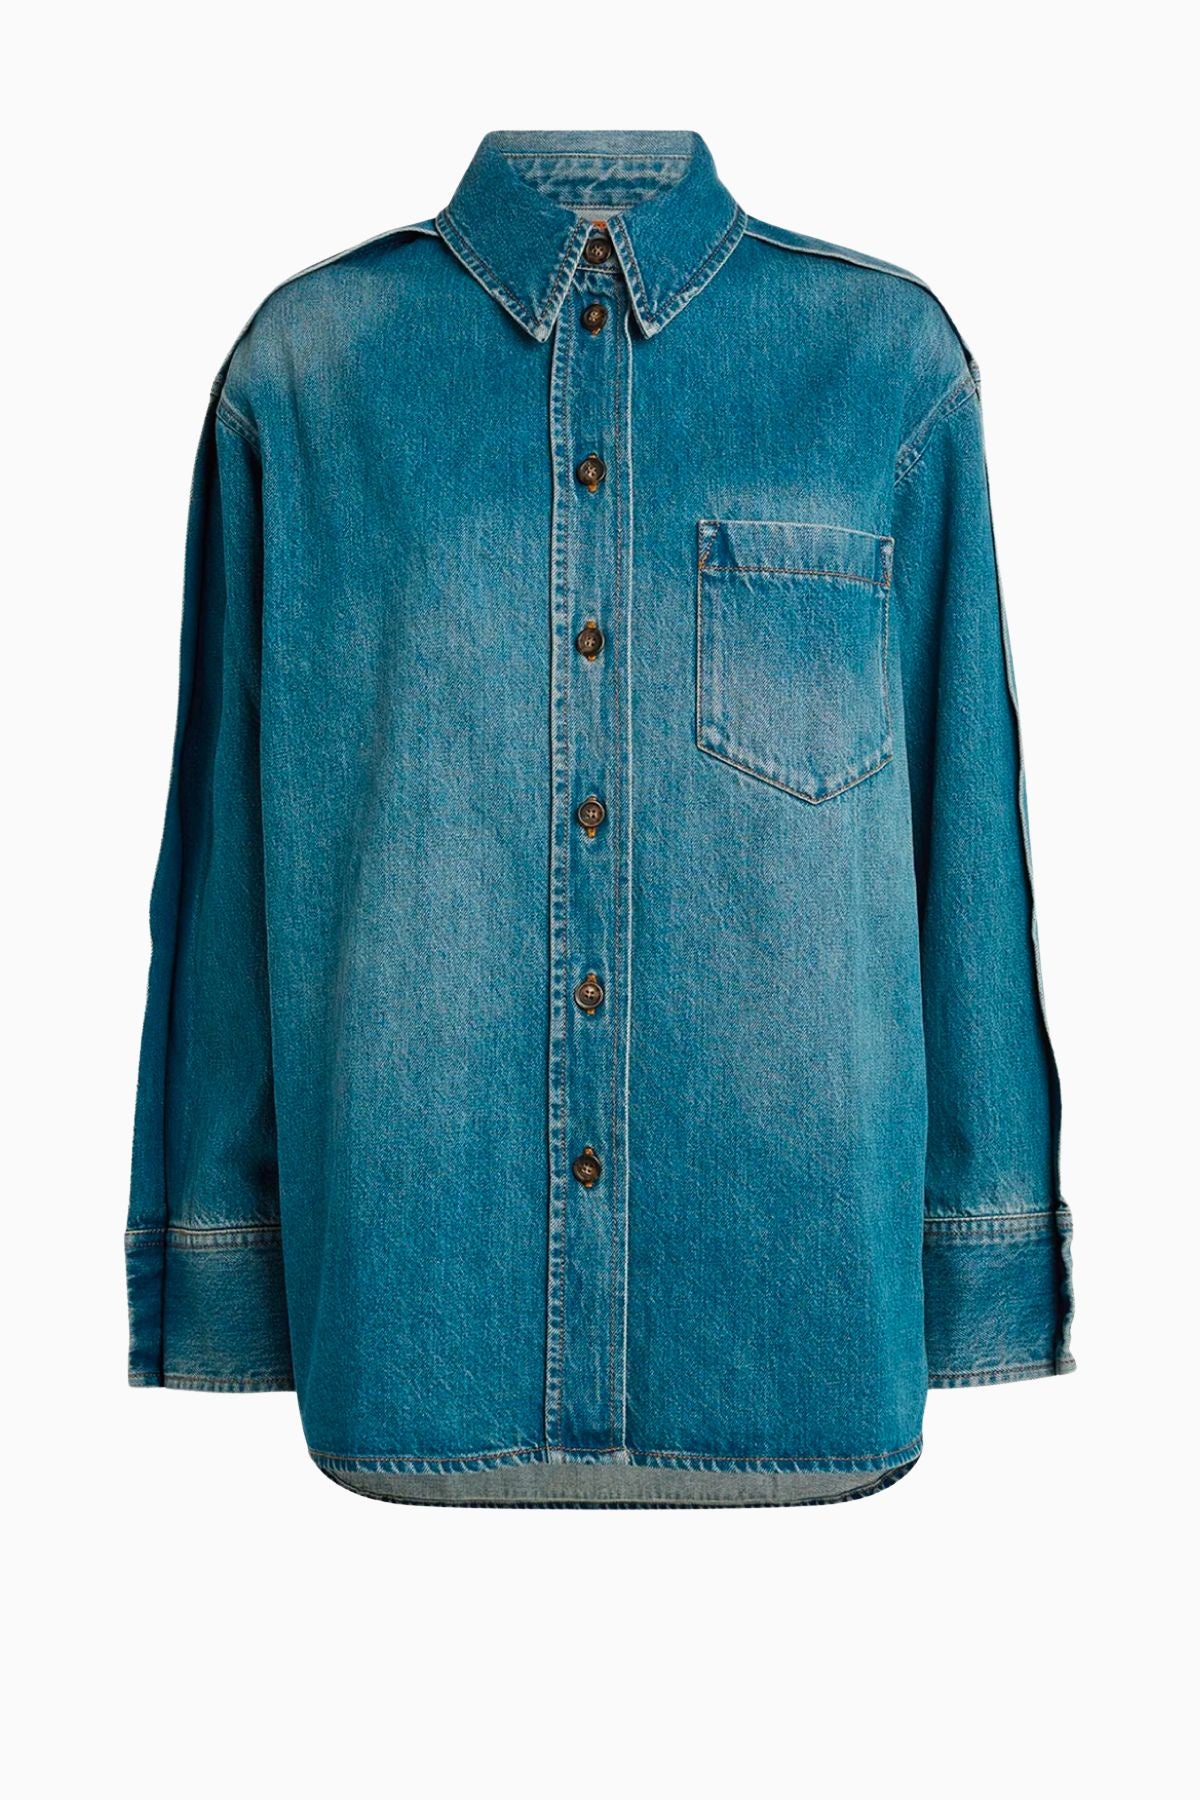 Victoria Beckham Oversized Pleat Detail Denim Shirt - Vintage Wash